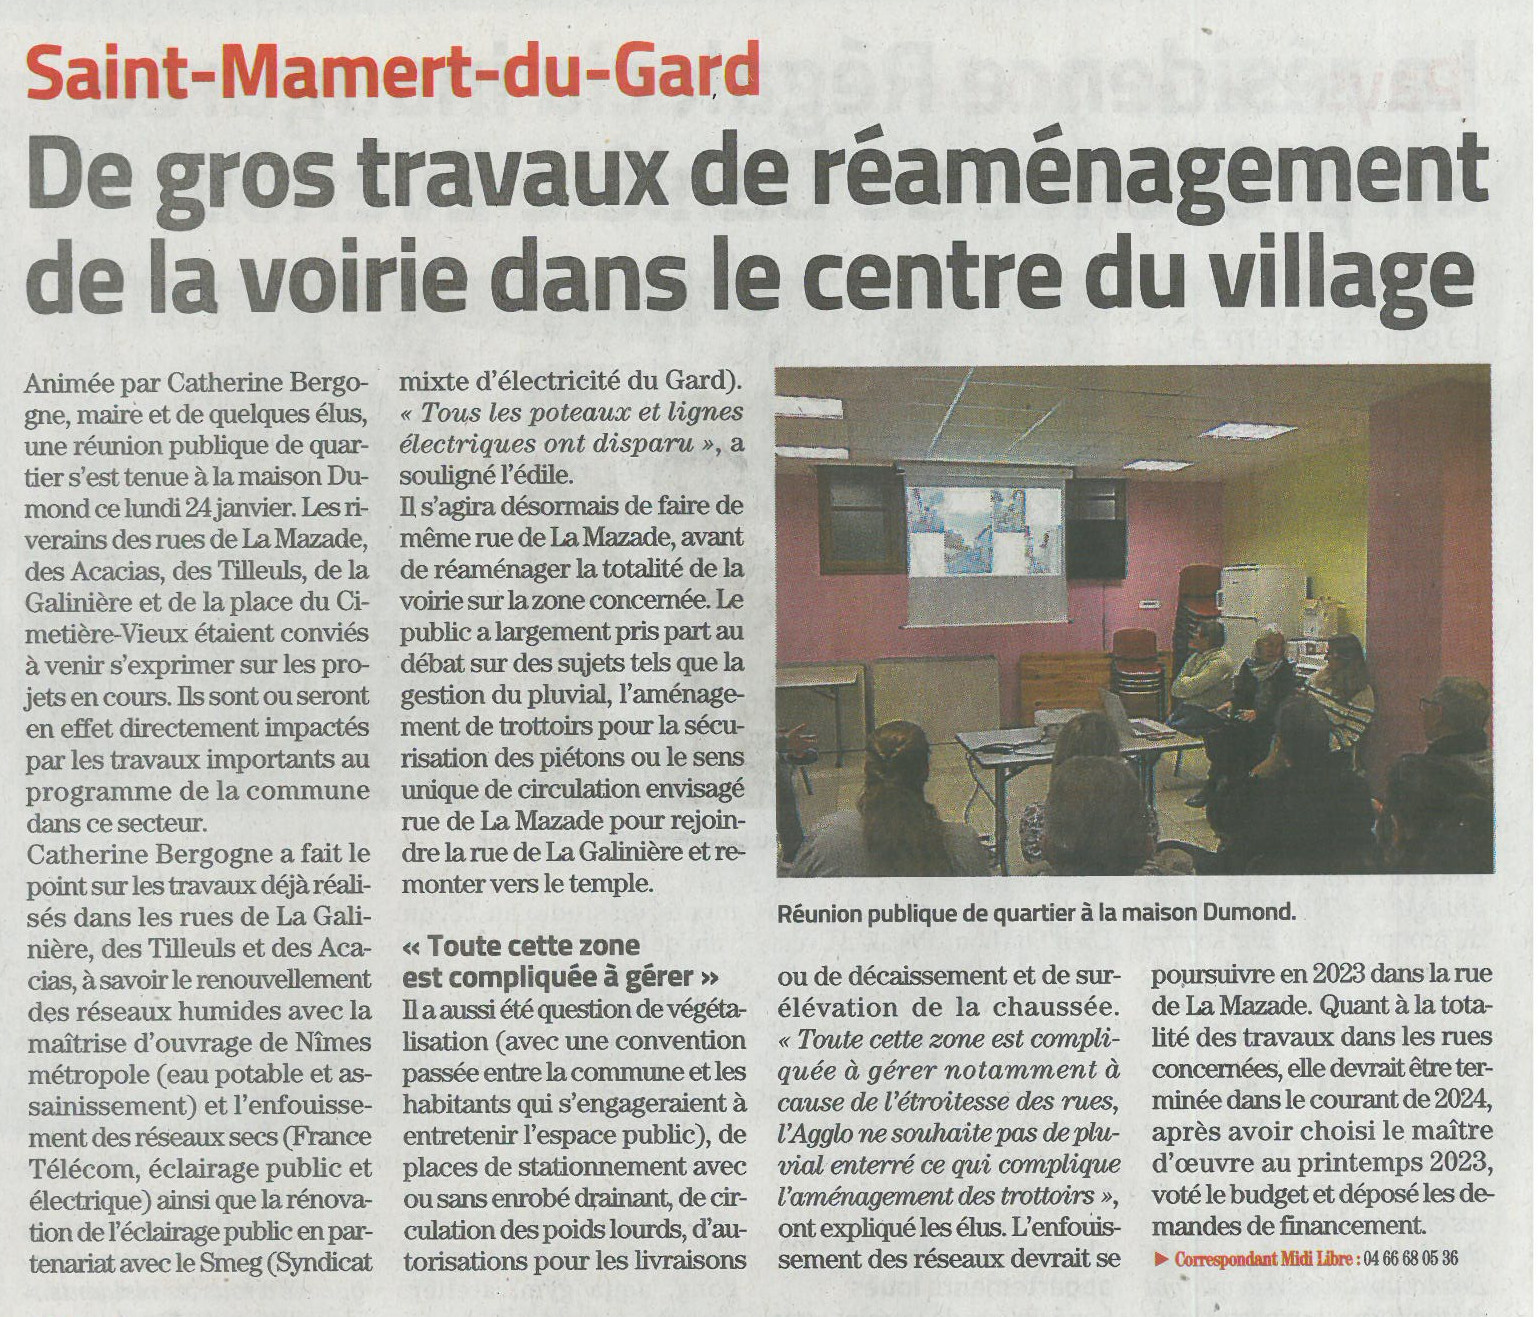 Réaménagement de la voirie à Saint-Mamert-du-Gard